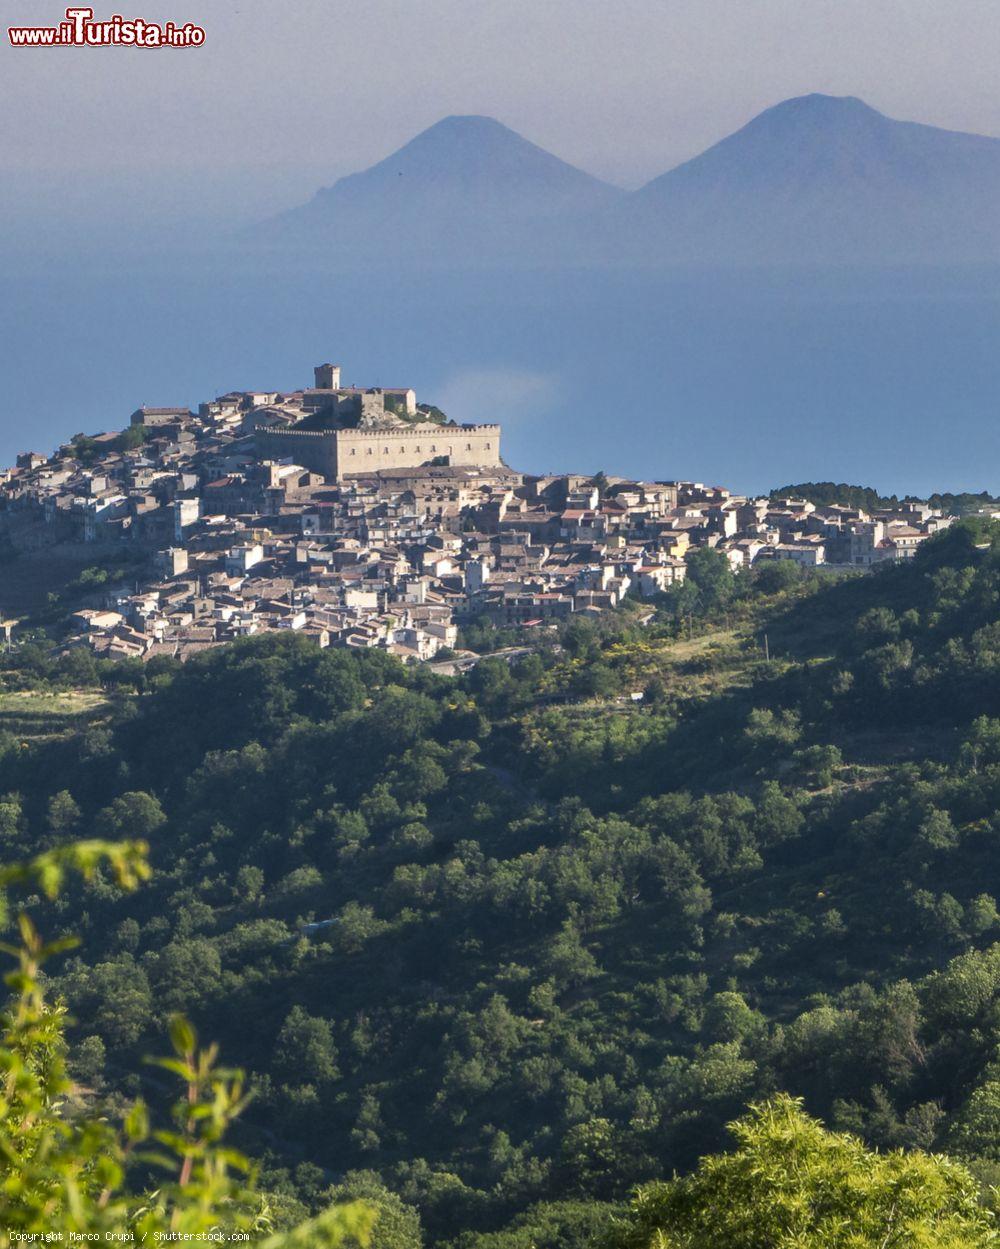 Immagine La vista di Montalbano Elicona in Sicilia, sulle sfondo Salina e Lipari, isole Eolie - © Marco Crupi / Shutterstock.com